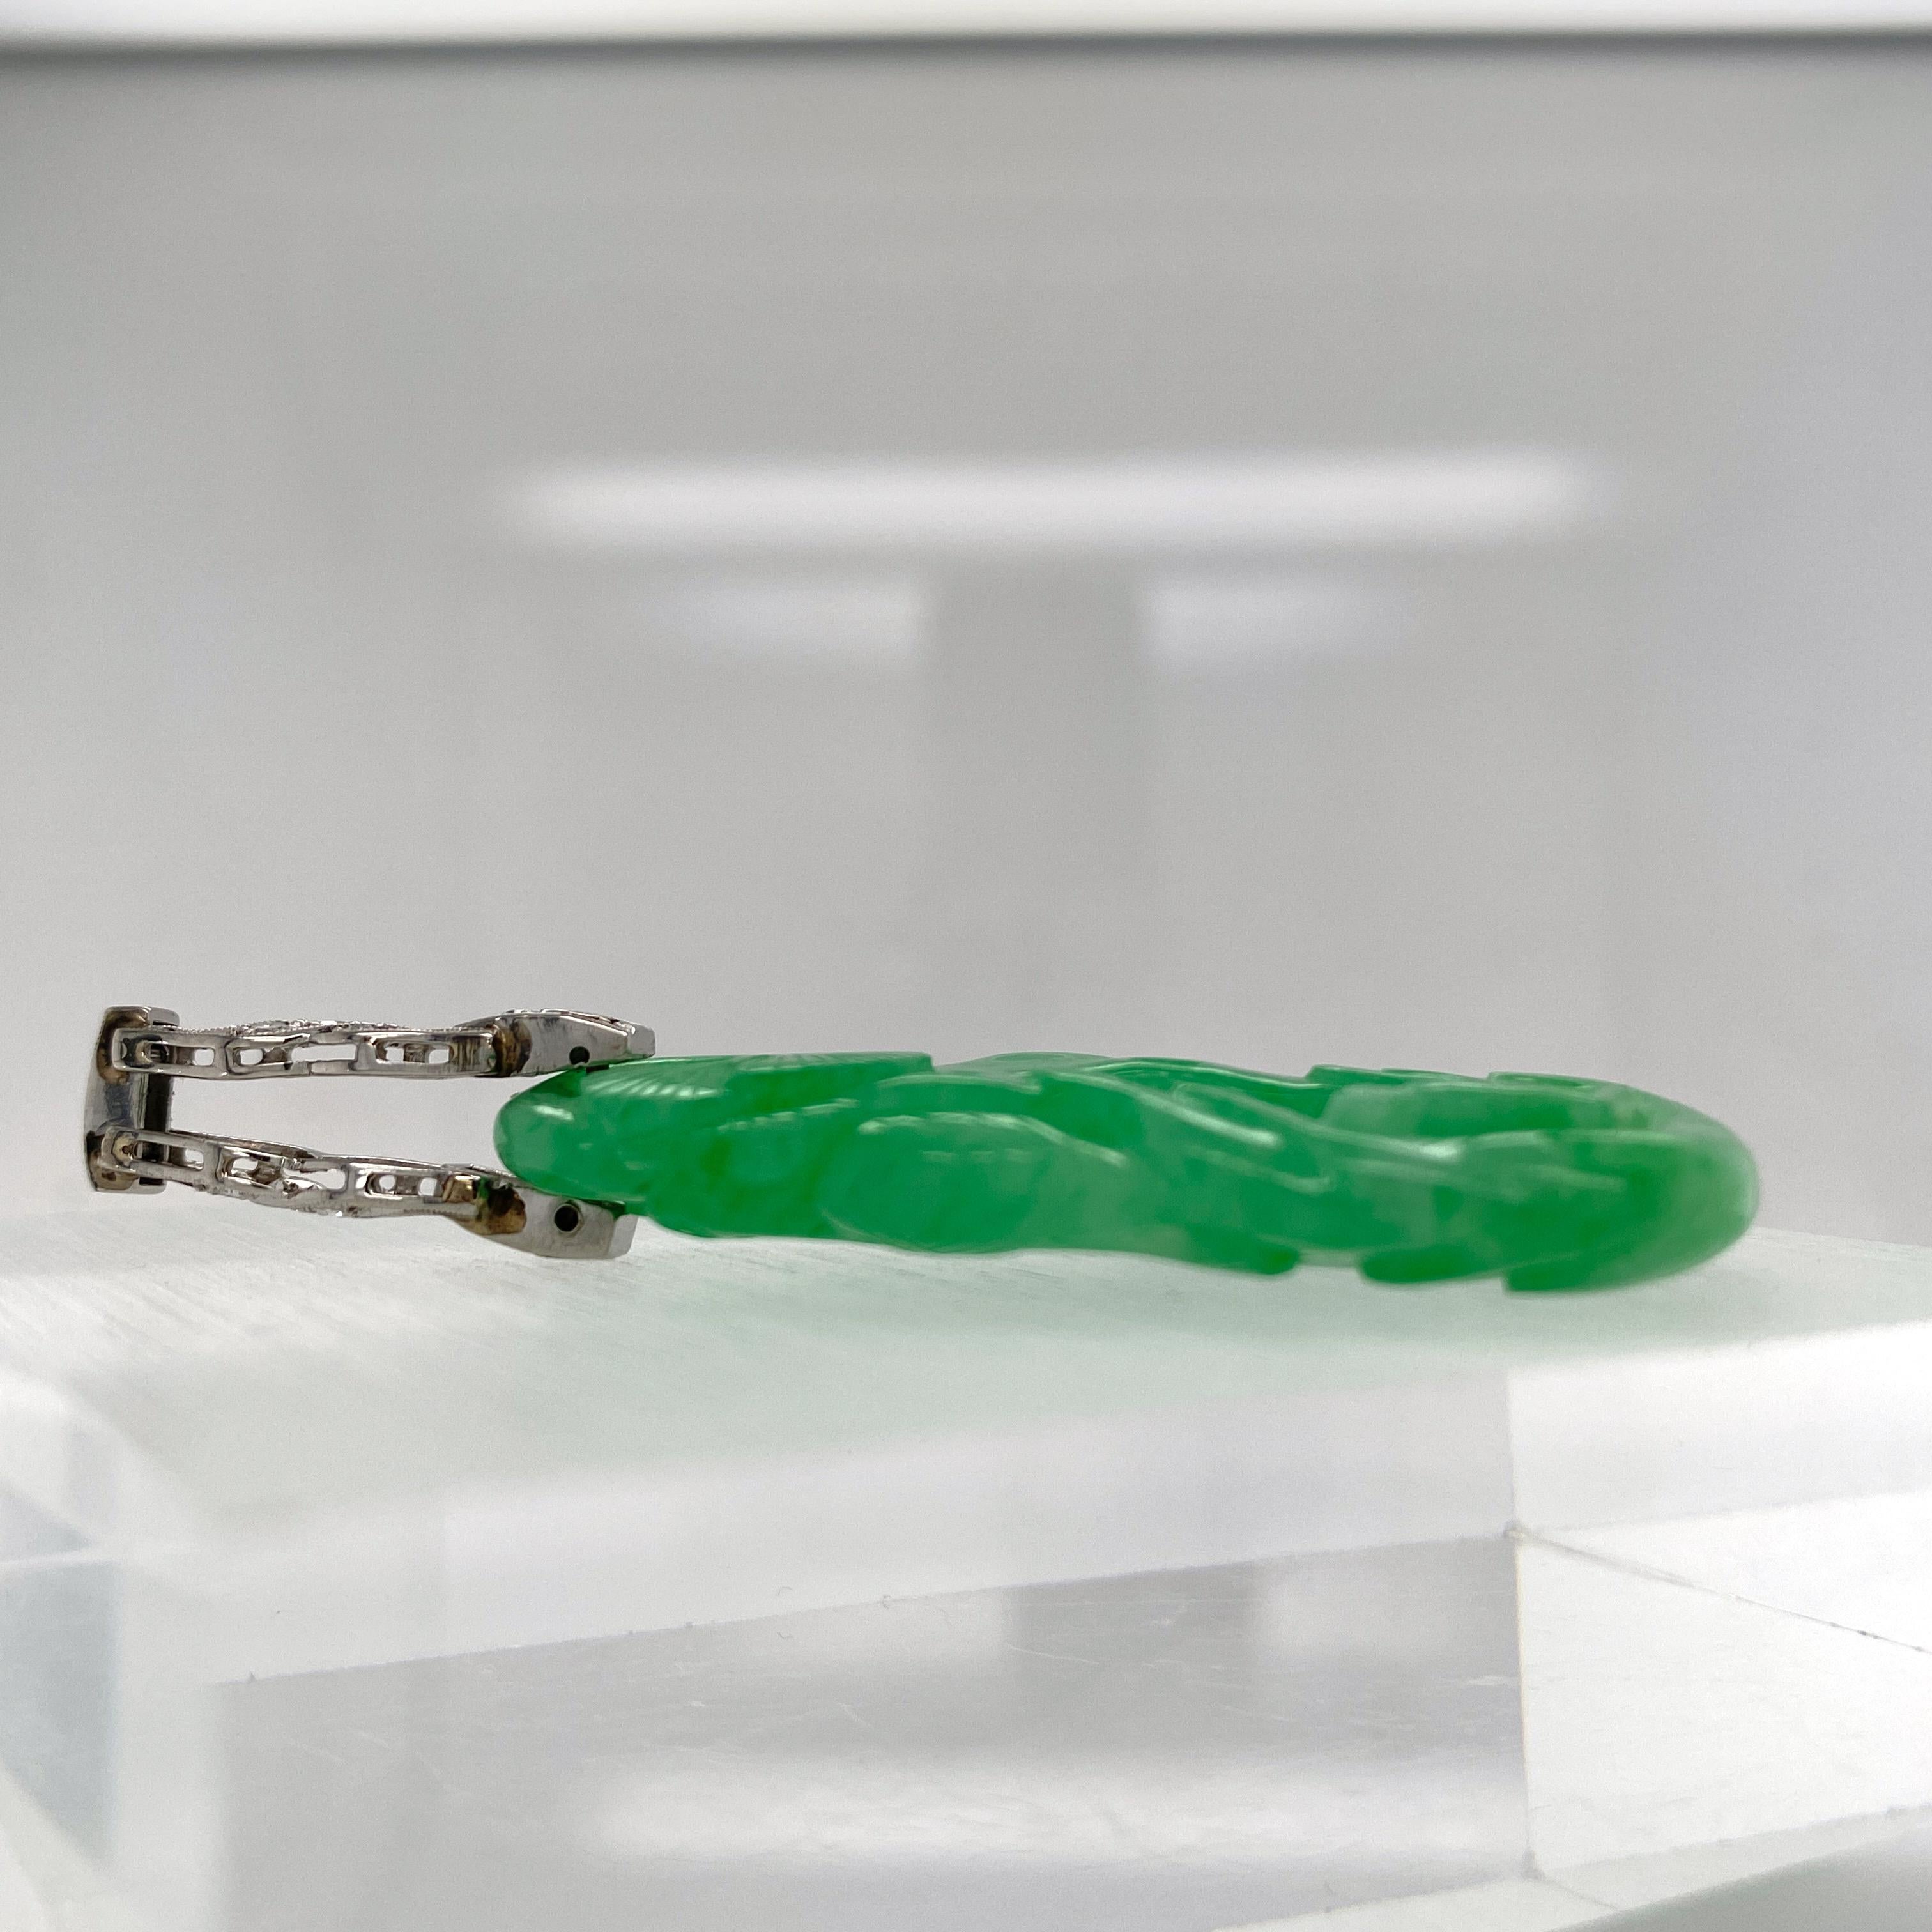 jade deer pendant